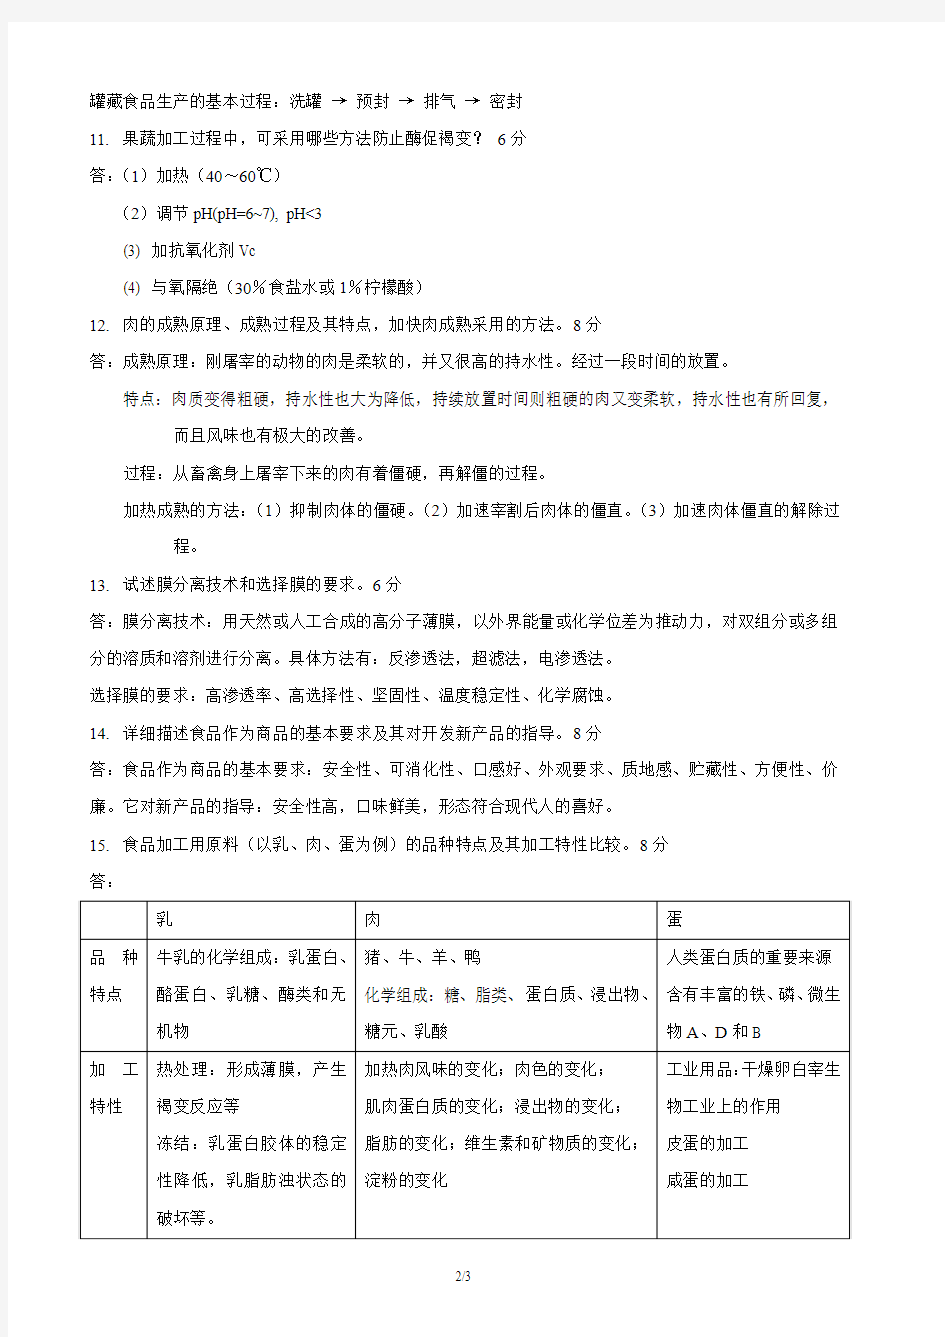 上海海洋大学课程考核试卷